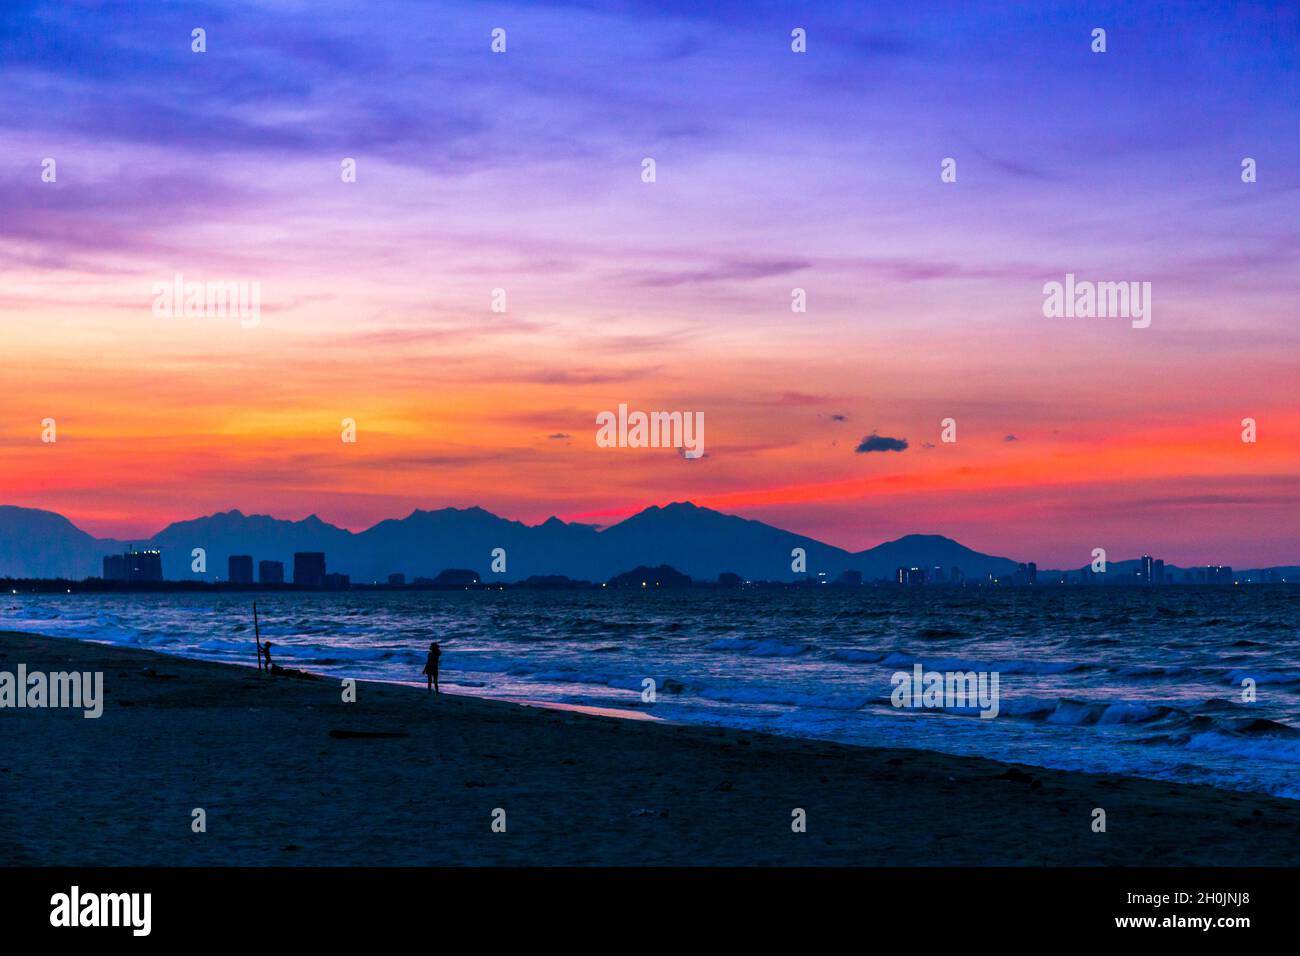 Wunderschöner Sonnenuntergang am Strand mit Rot-, Blau- und Magentaroten, mit dem Ozean und den Bergen in der Szene. Stockfoto